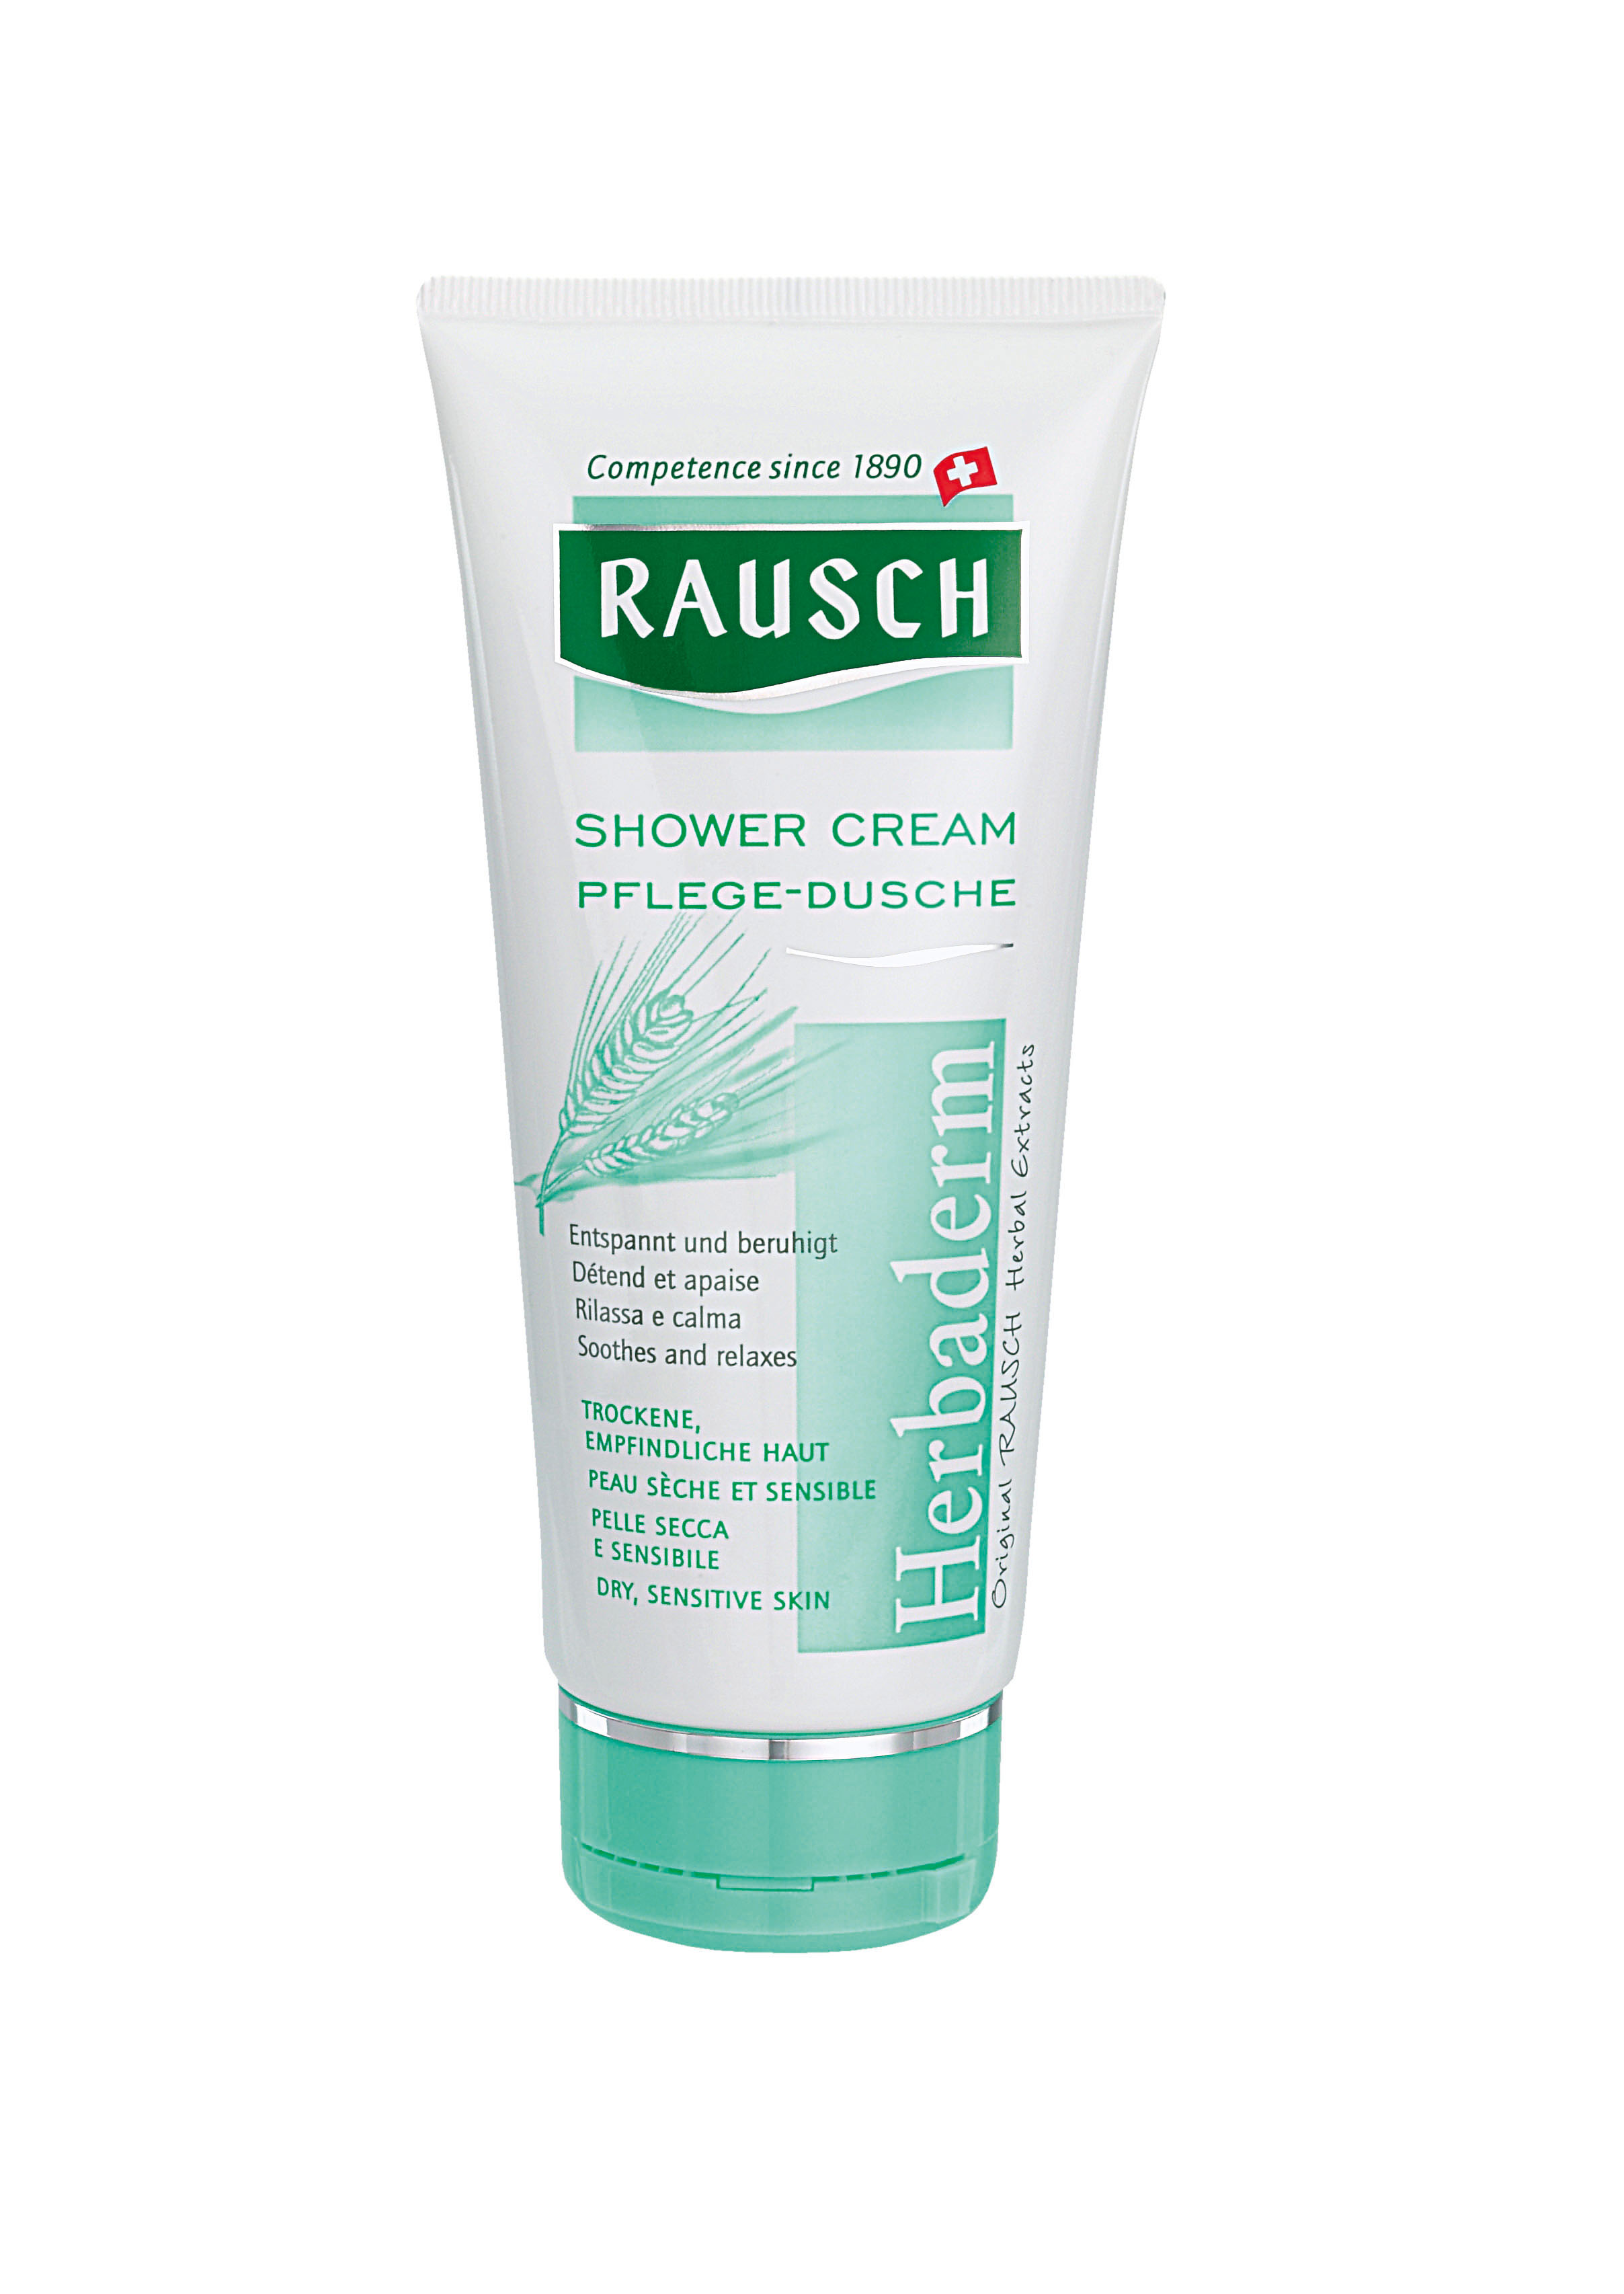 RAUSCH Shower Cream 200 ml